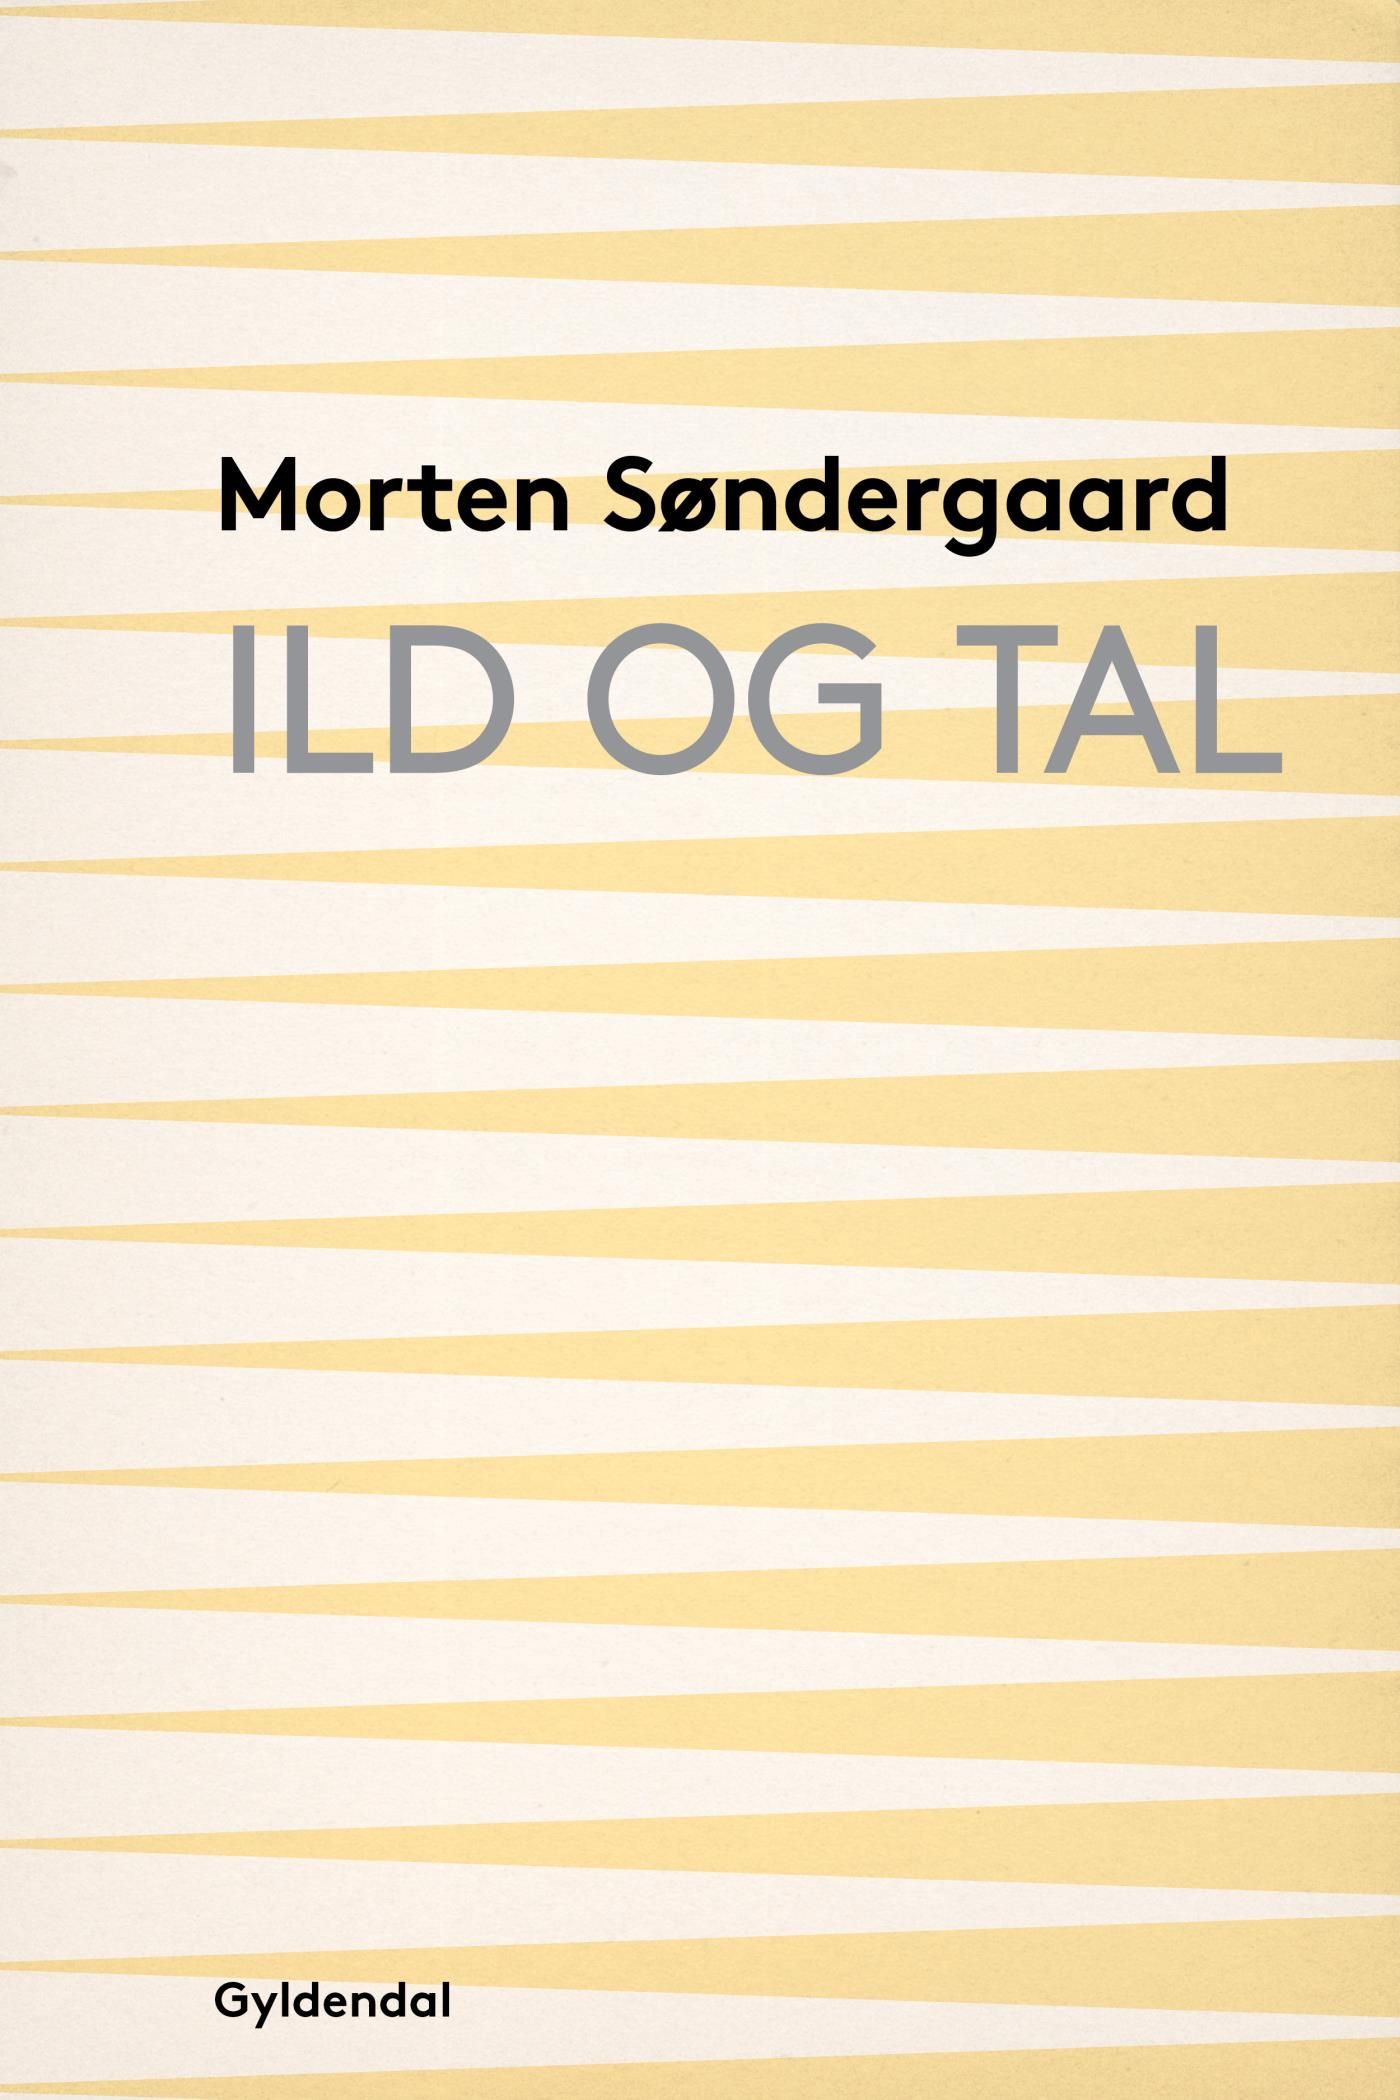 Ild og tal, e-bog af Morten Søndergaard